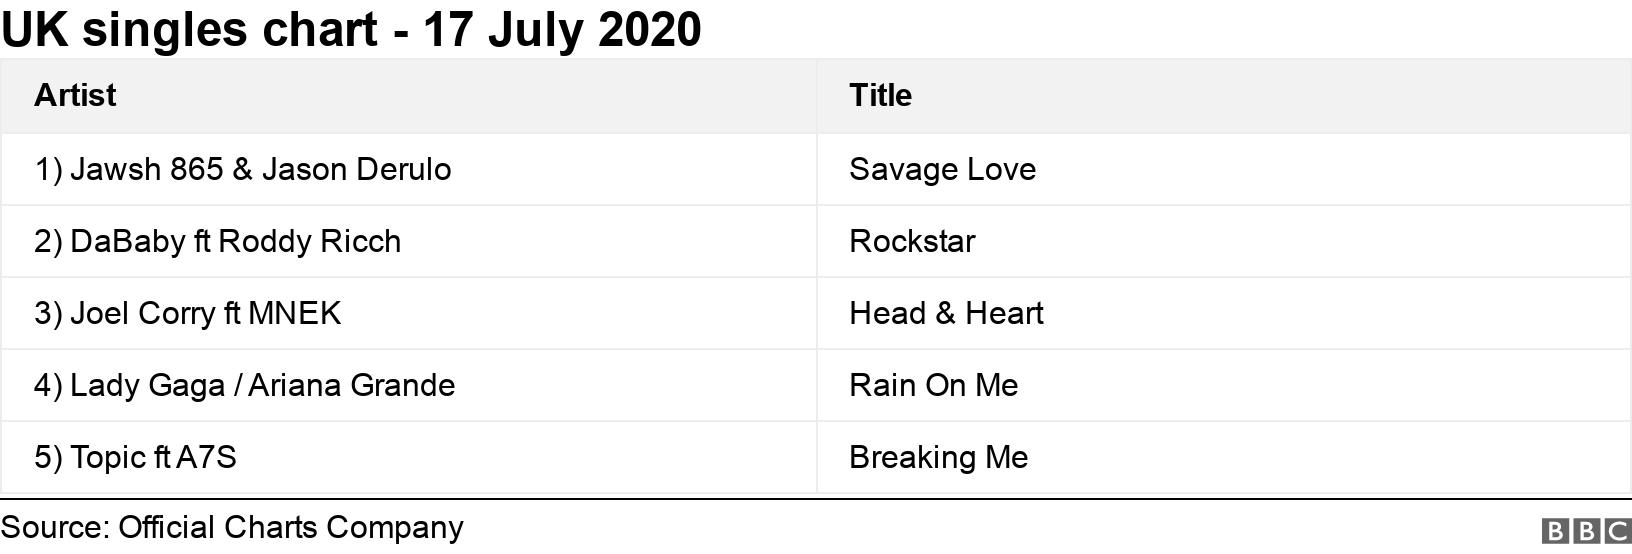 UK singles chart - 17 July 2020. . .